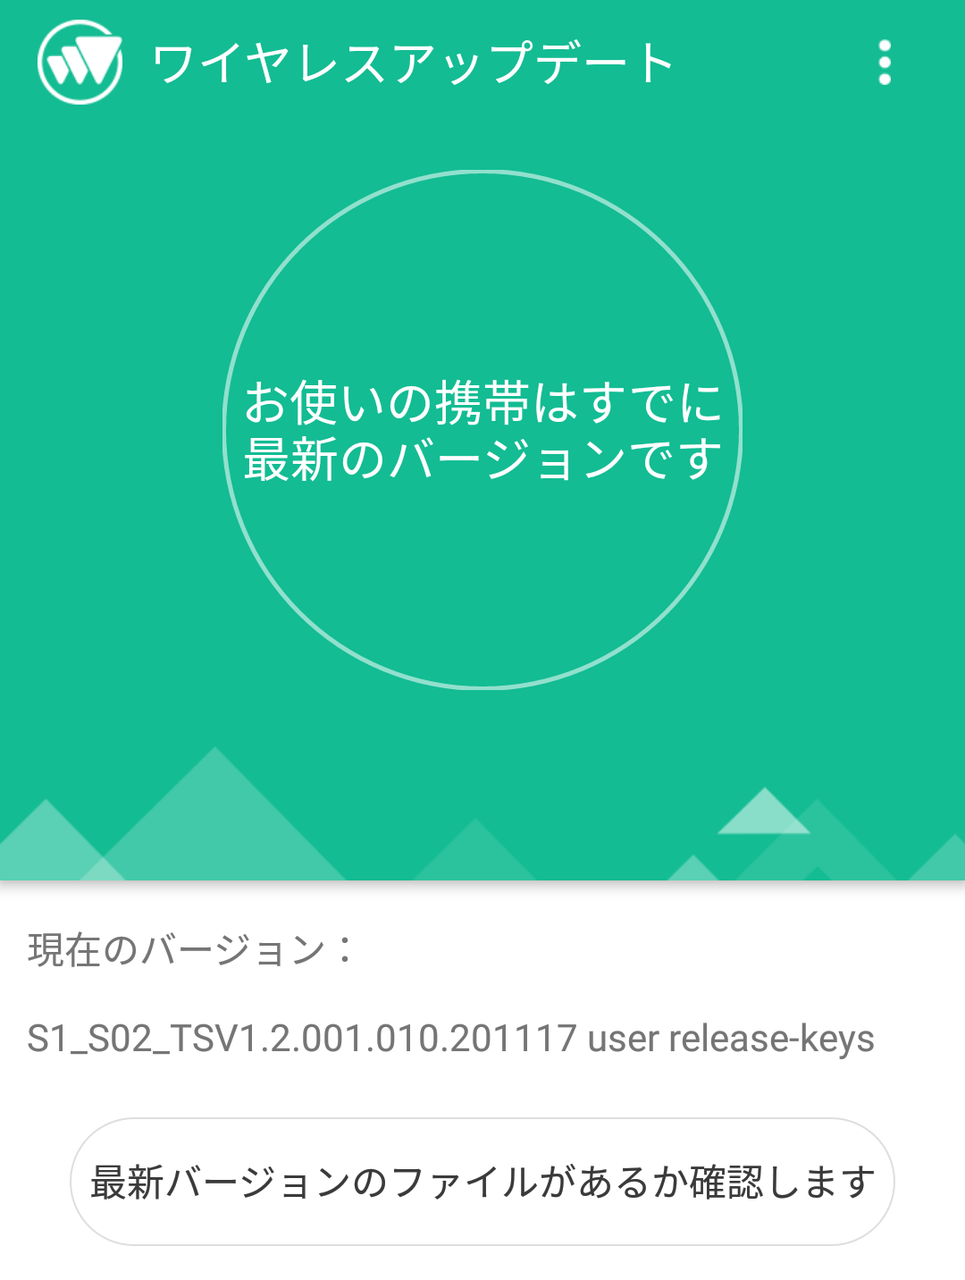 S1_S02_TSV1.2.001.010.201117 user release-keys